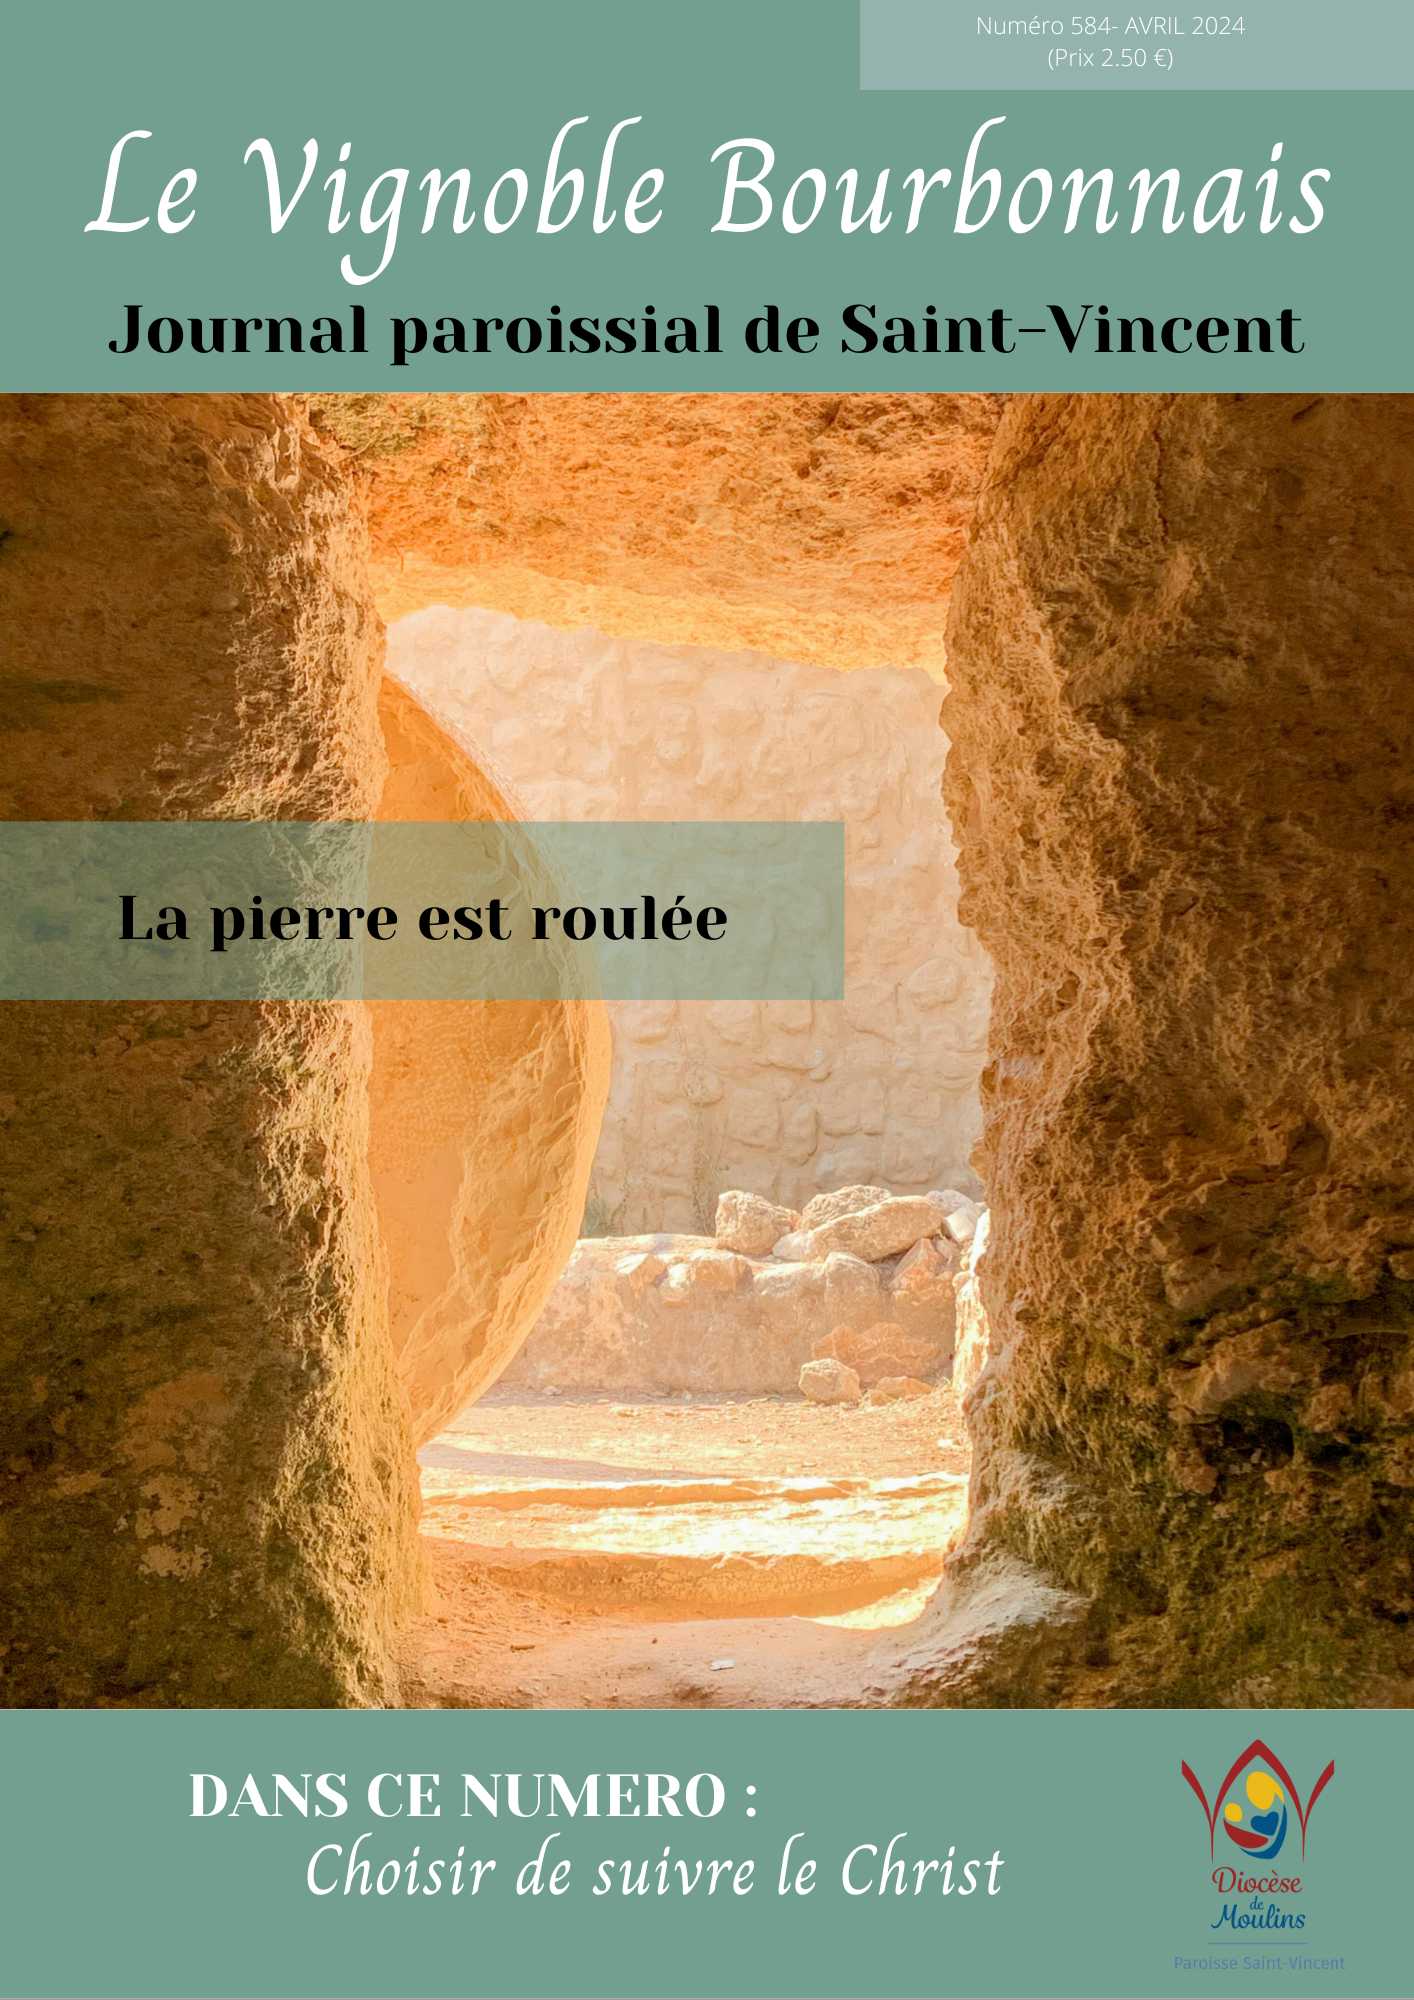 Journal paroissial de la paroisse Saint-Vincent